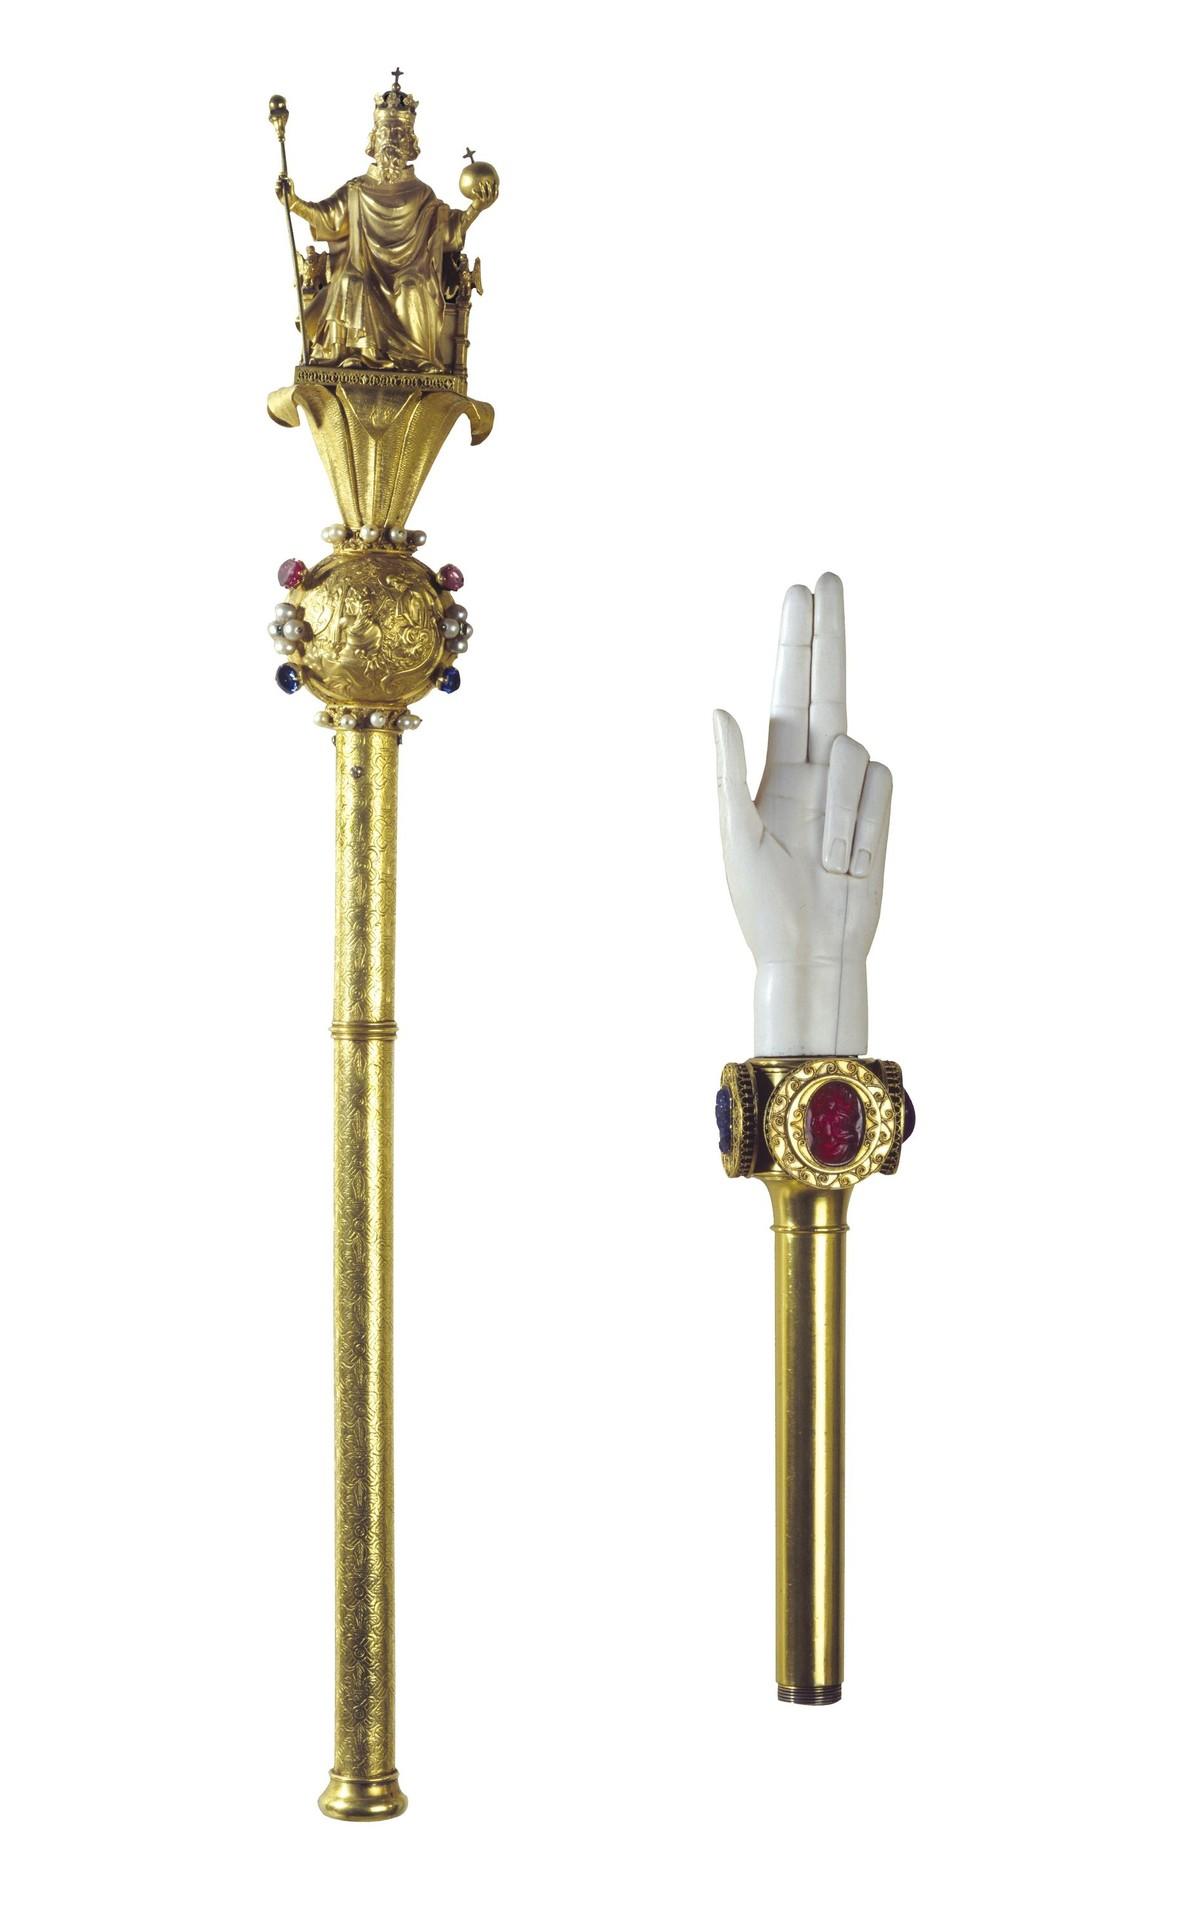 Le sceptre de Charles V et la main de justice